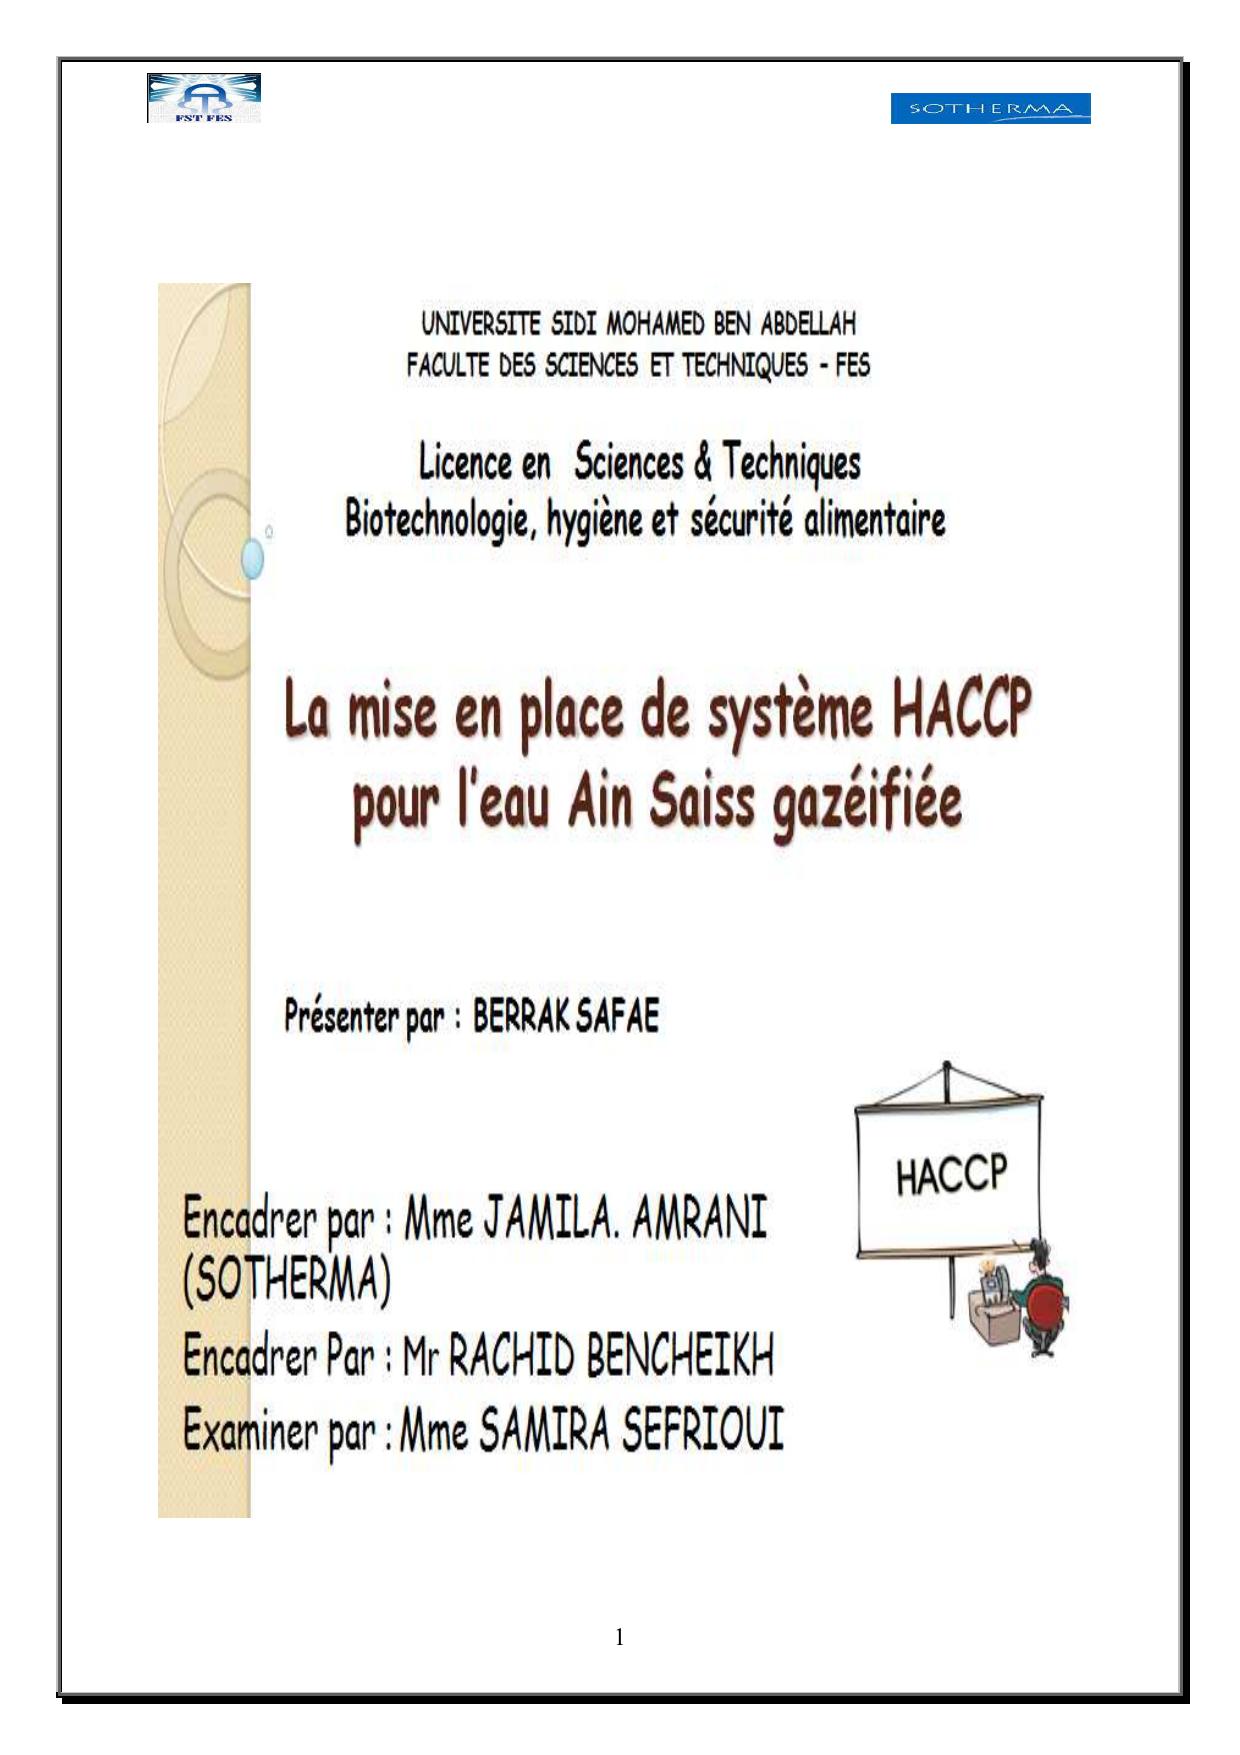 La mise en place de système HACCP pour l'eau Ain Saiss Gazéifiée